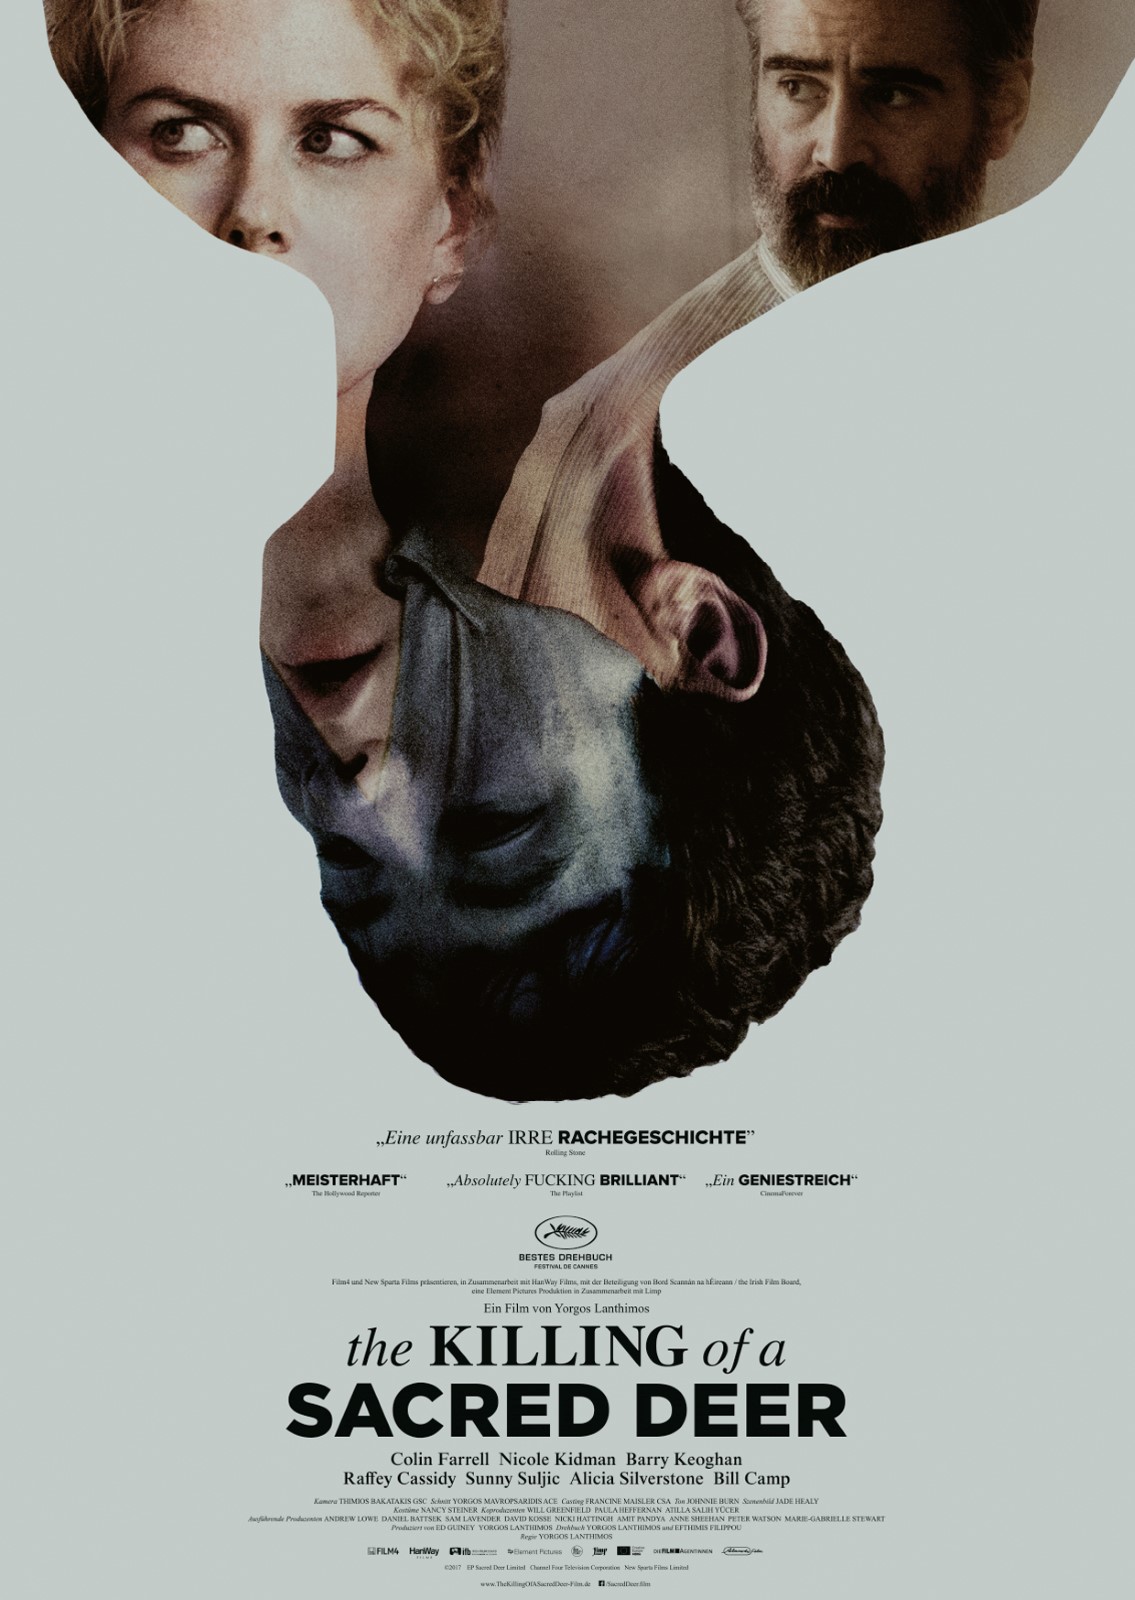 Filmtipp der Woche: THE KILLING OF A SACRED DEER